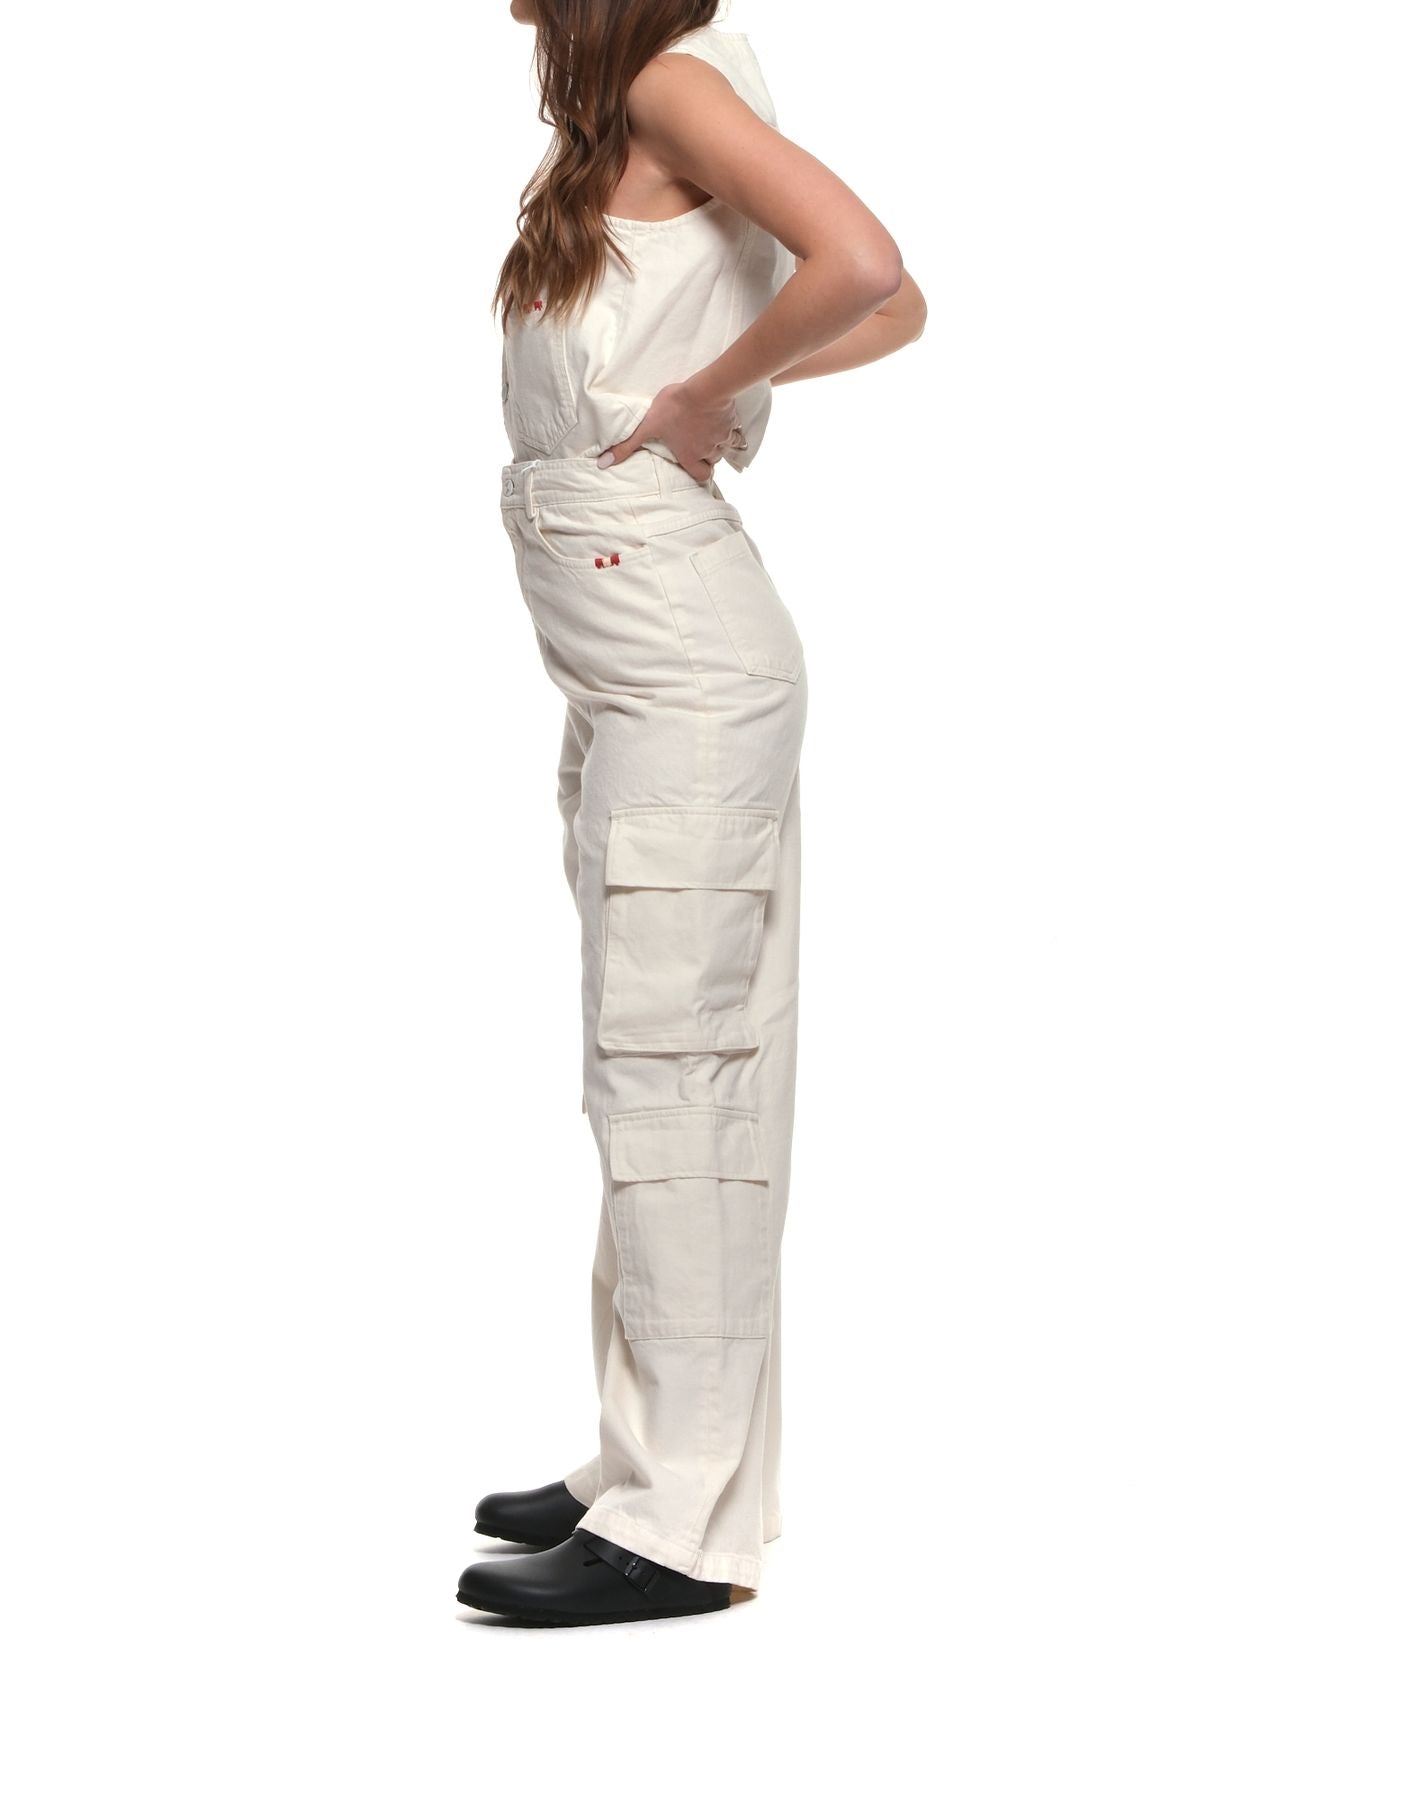 Jeans für Frau AMD065P3200111 Weiß Amish